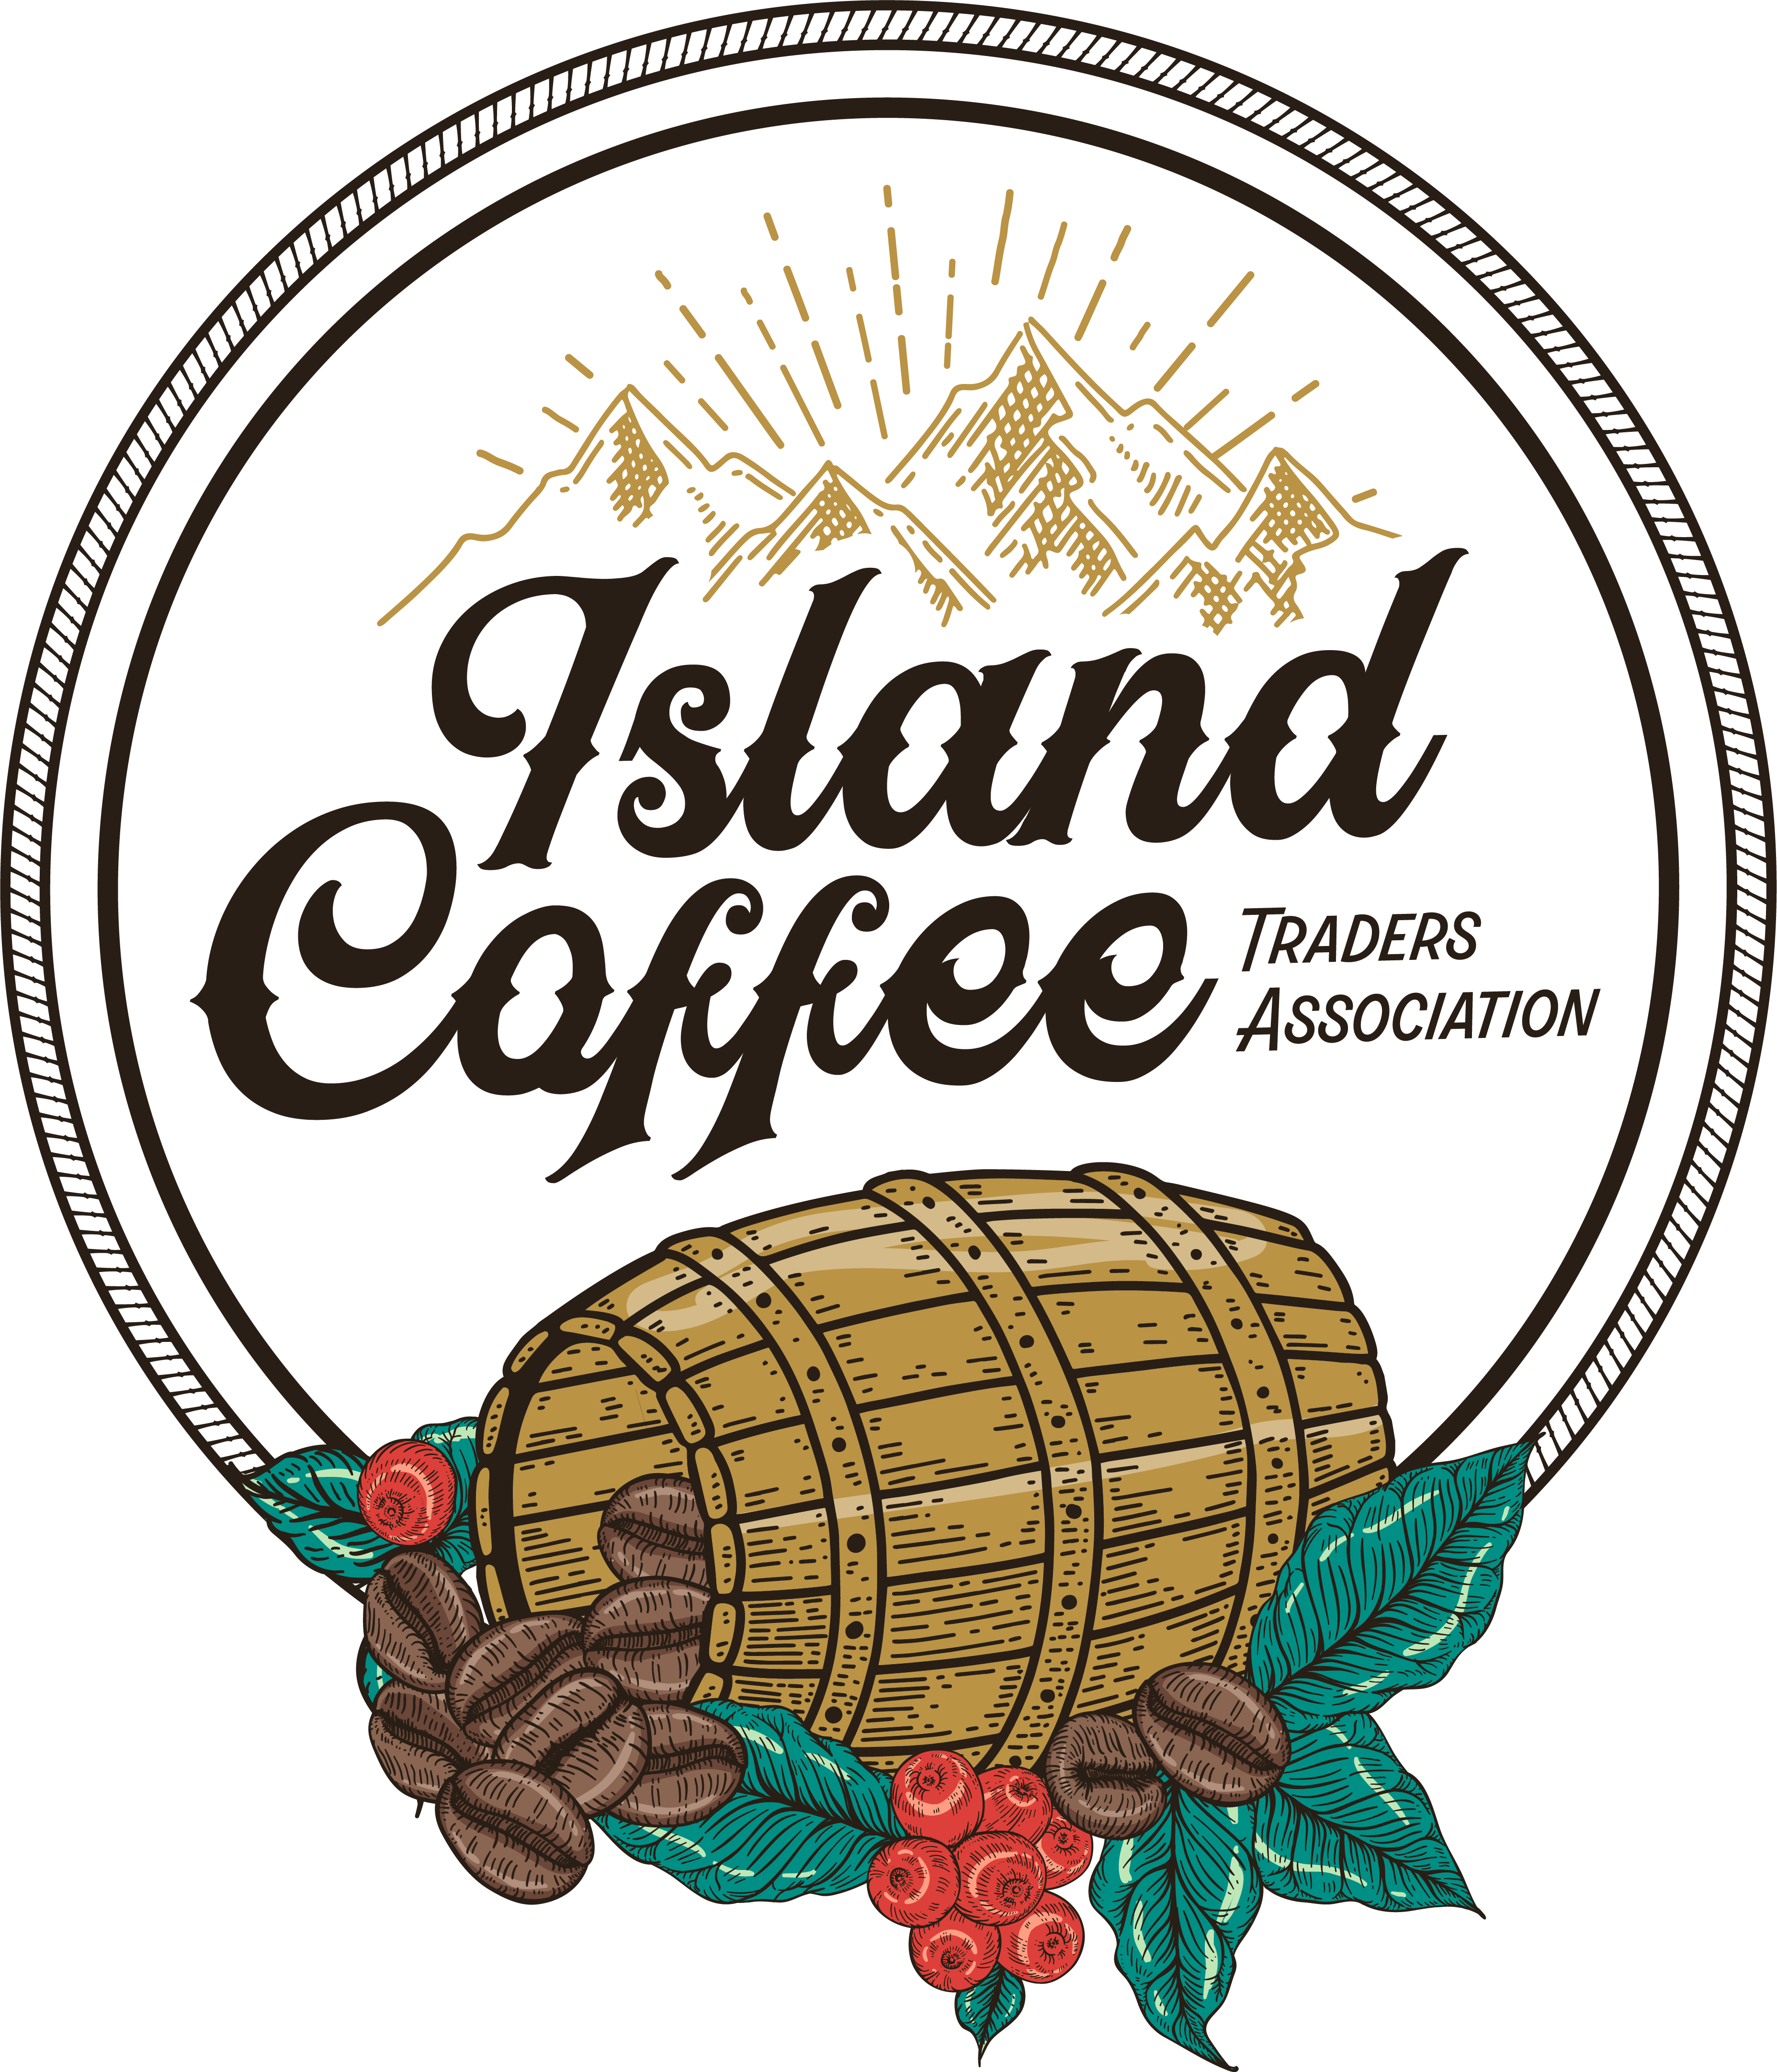 Island Coffee Traders